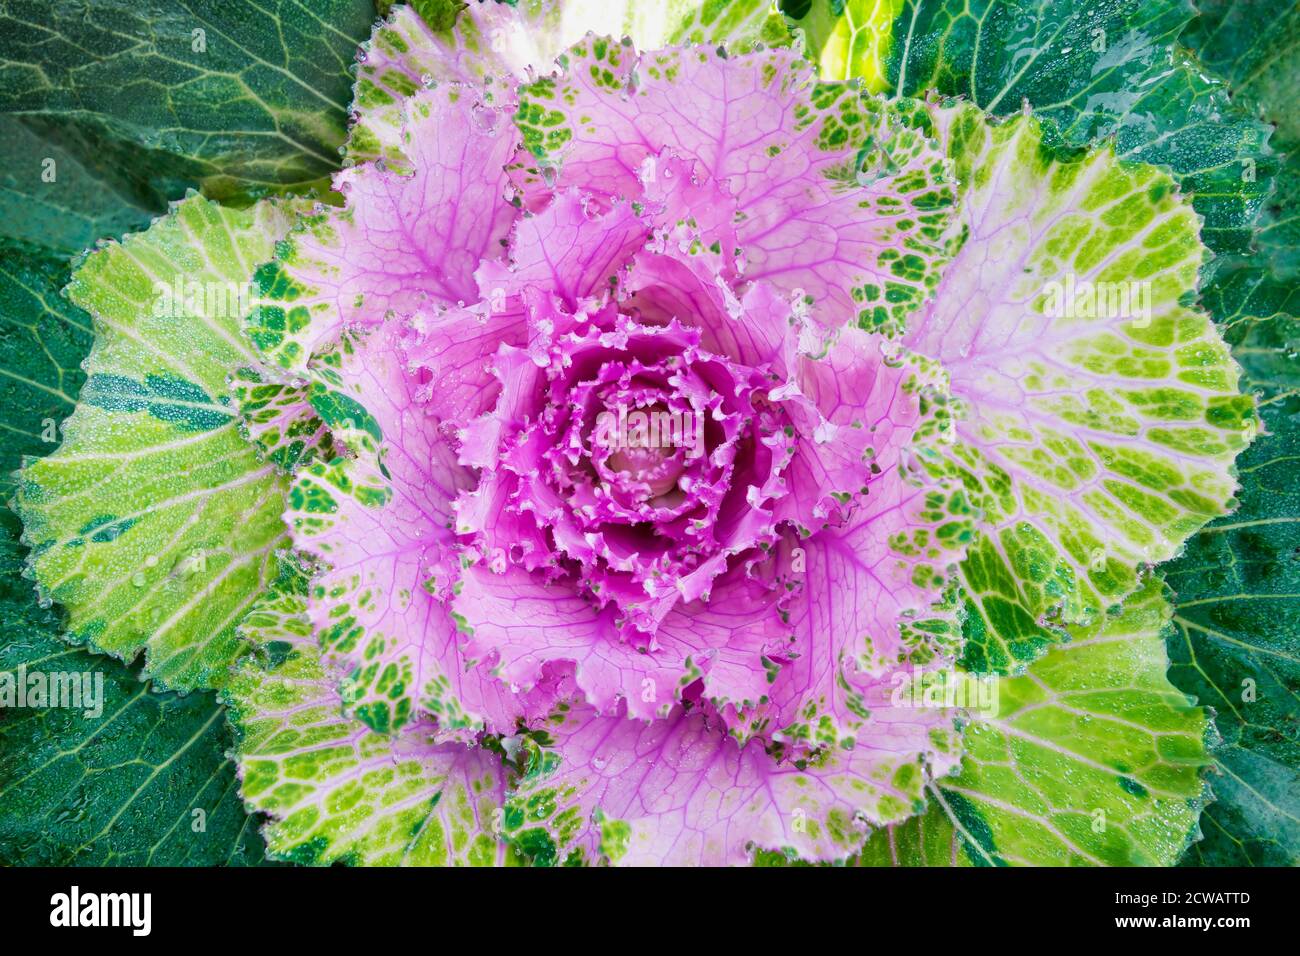 Fresco colorato ornamentale viola cavolo / fiore kale con gocce d'acqua. Profondità di campo poco profonda. SDF. Foto Stock